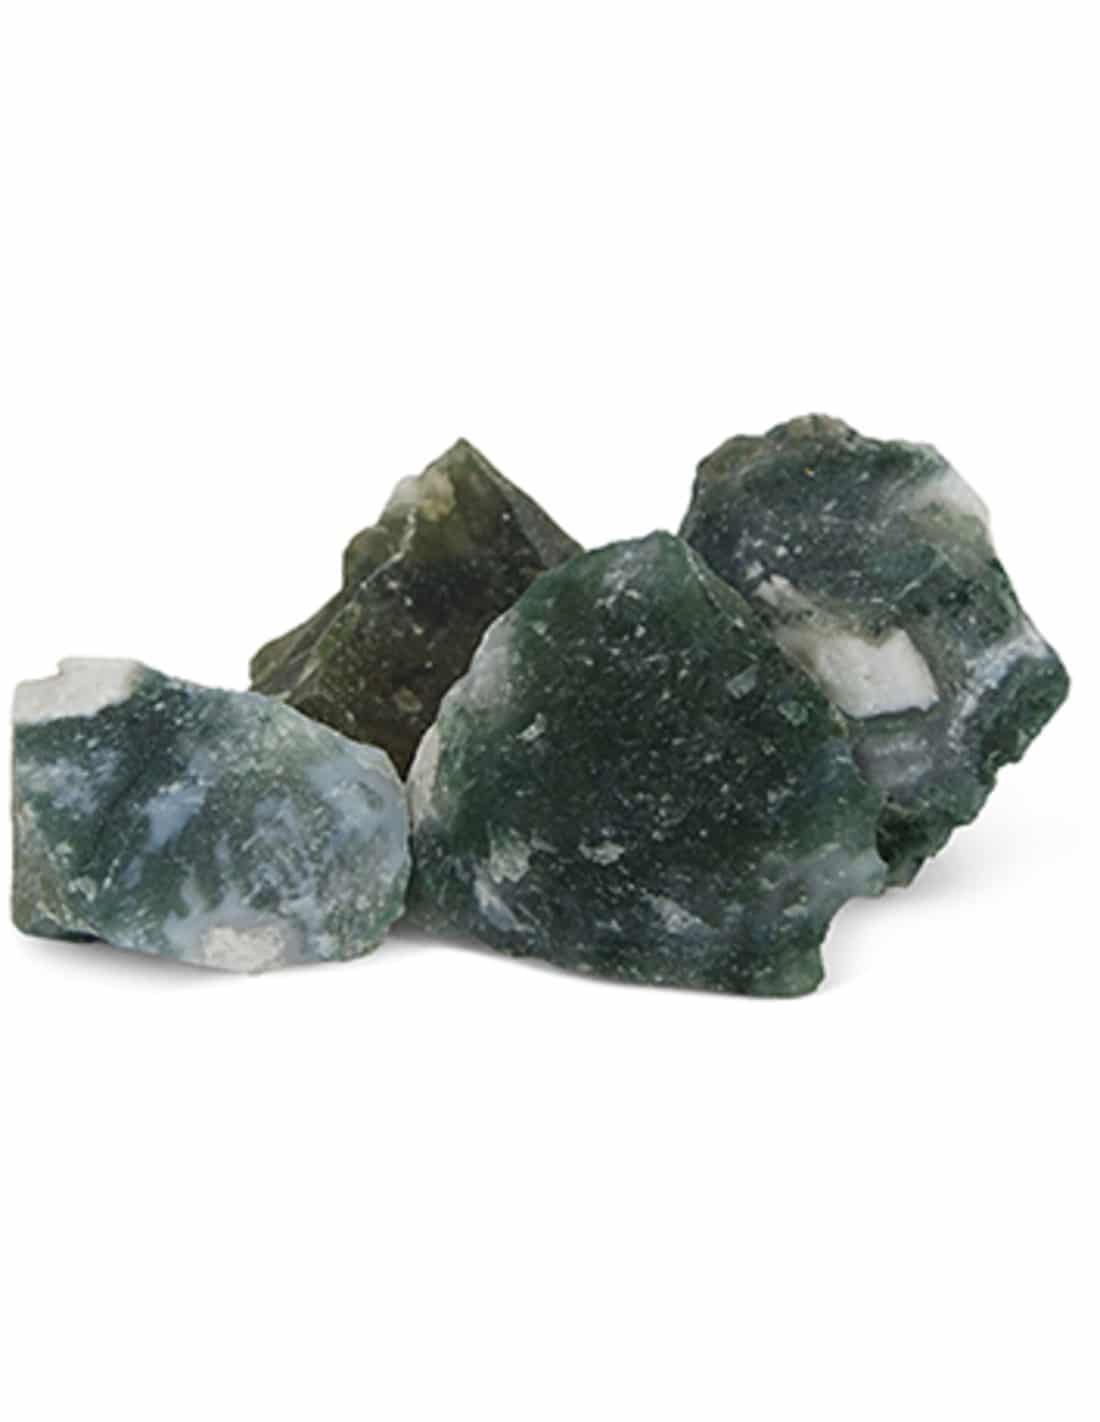 Roher Brocken Edelstein Moosachat Indien (250 Gramm) unter Edelsteine & Mineralien - Edelstein Arten - Rohe Edelsteine